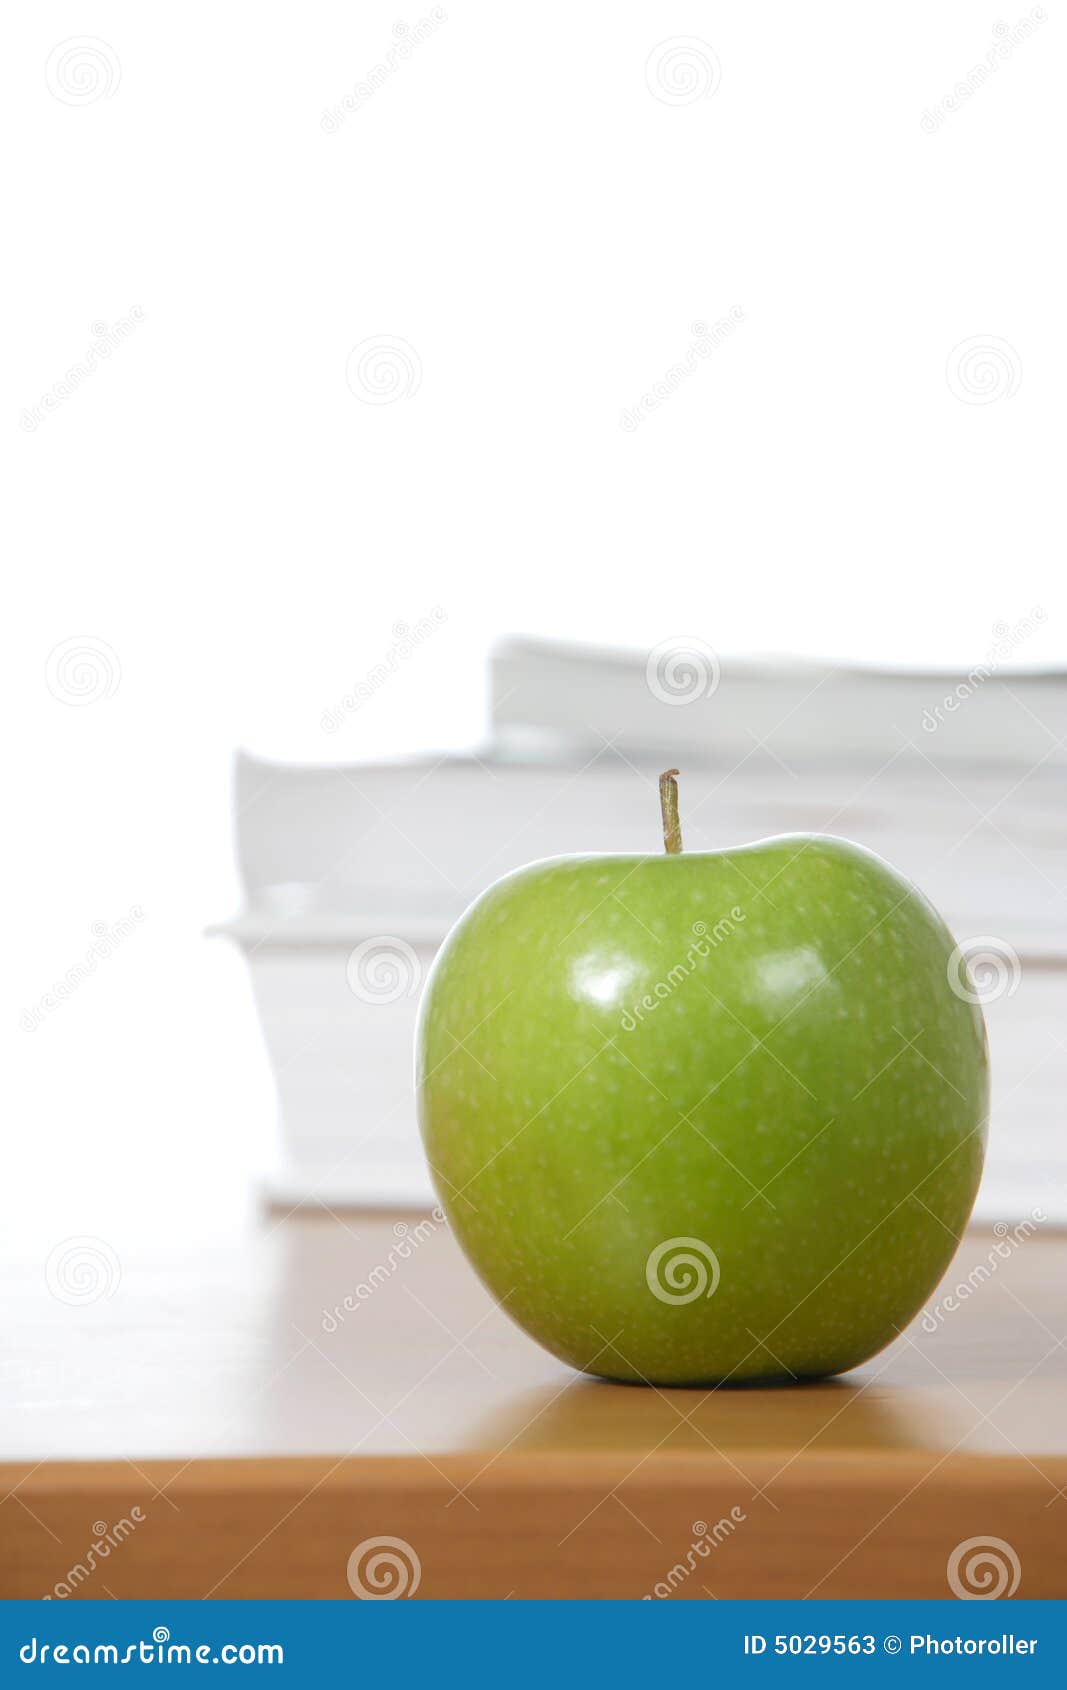 Яблоко на обед